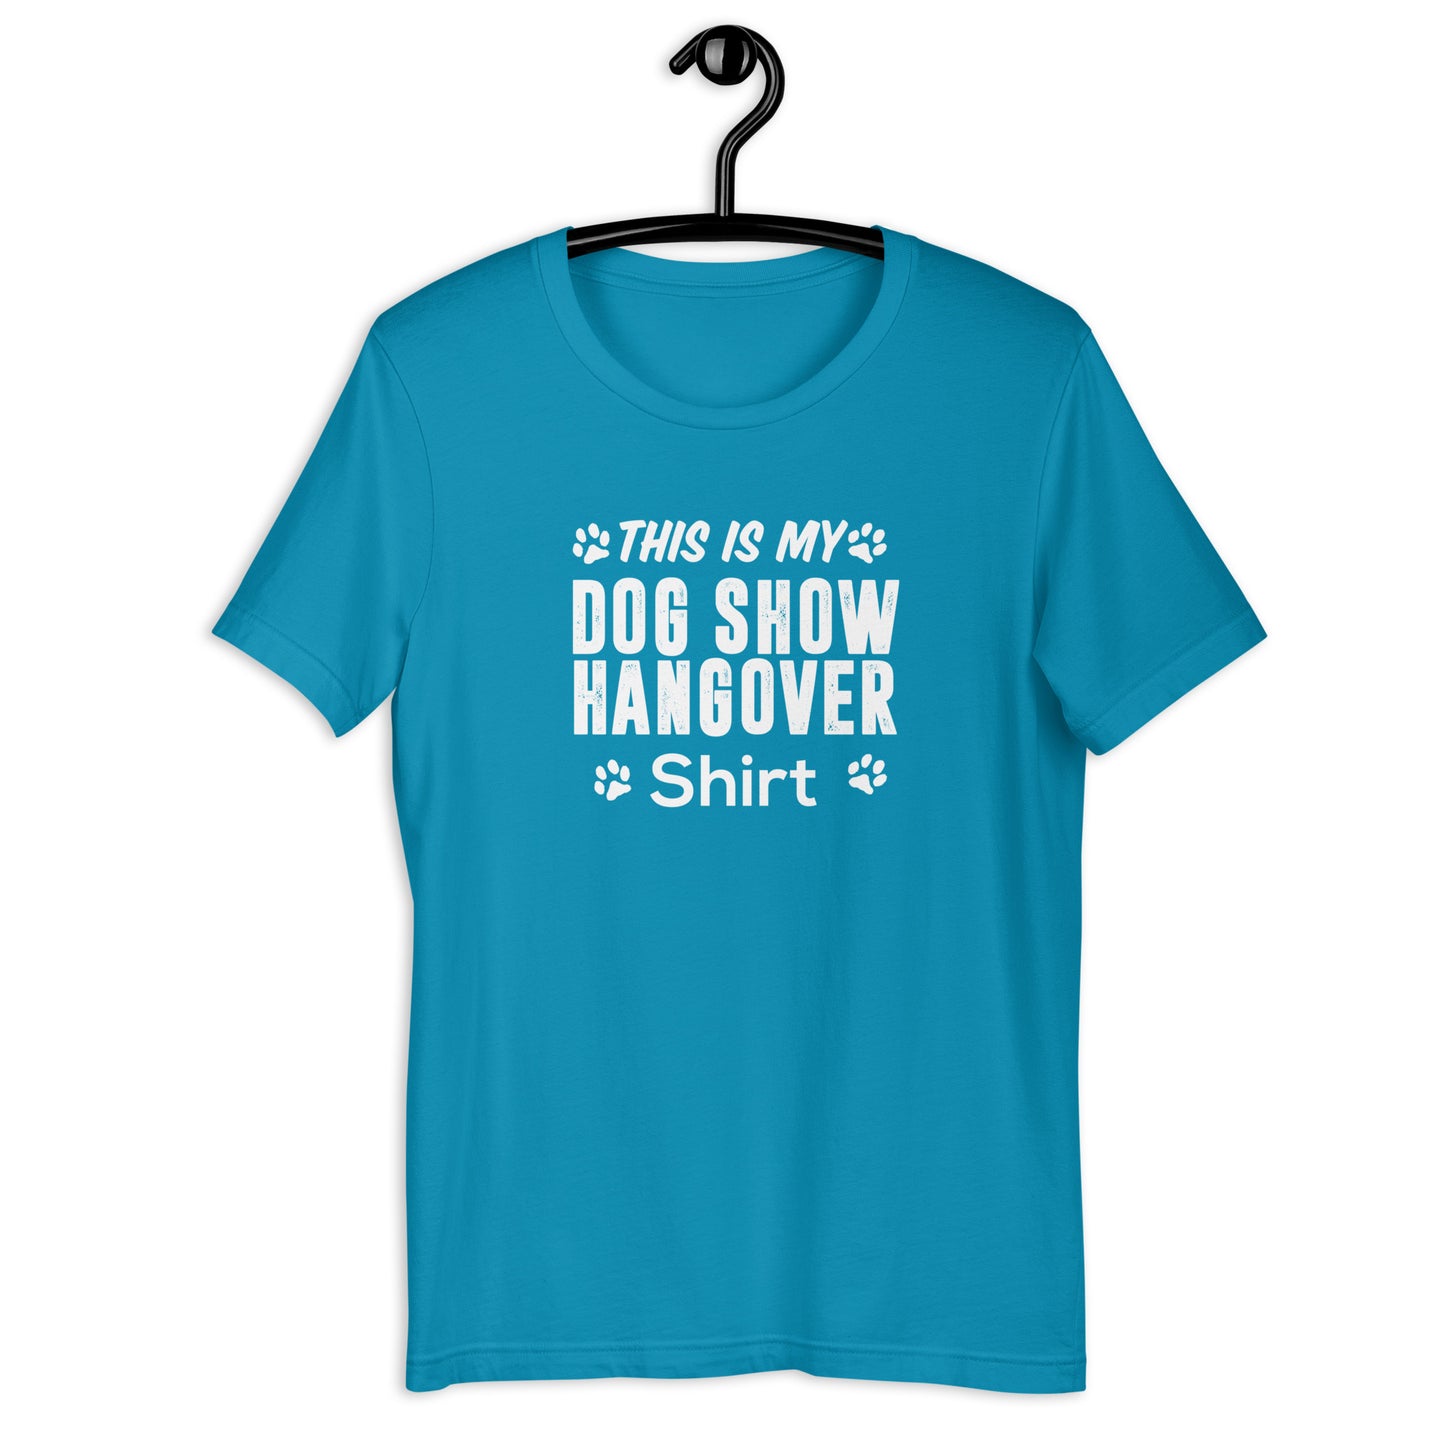 DOG SHOW HANGOVER SHIRT - Unisex t-shirt